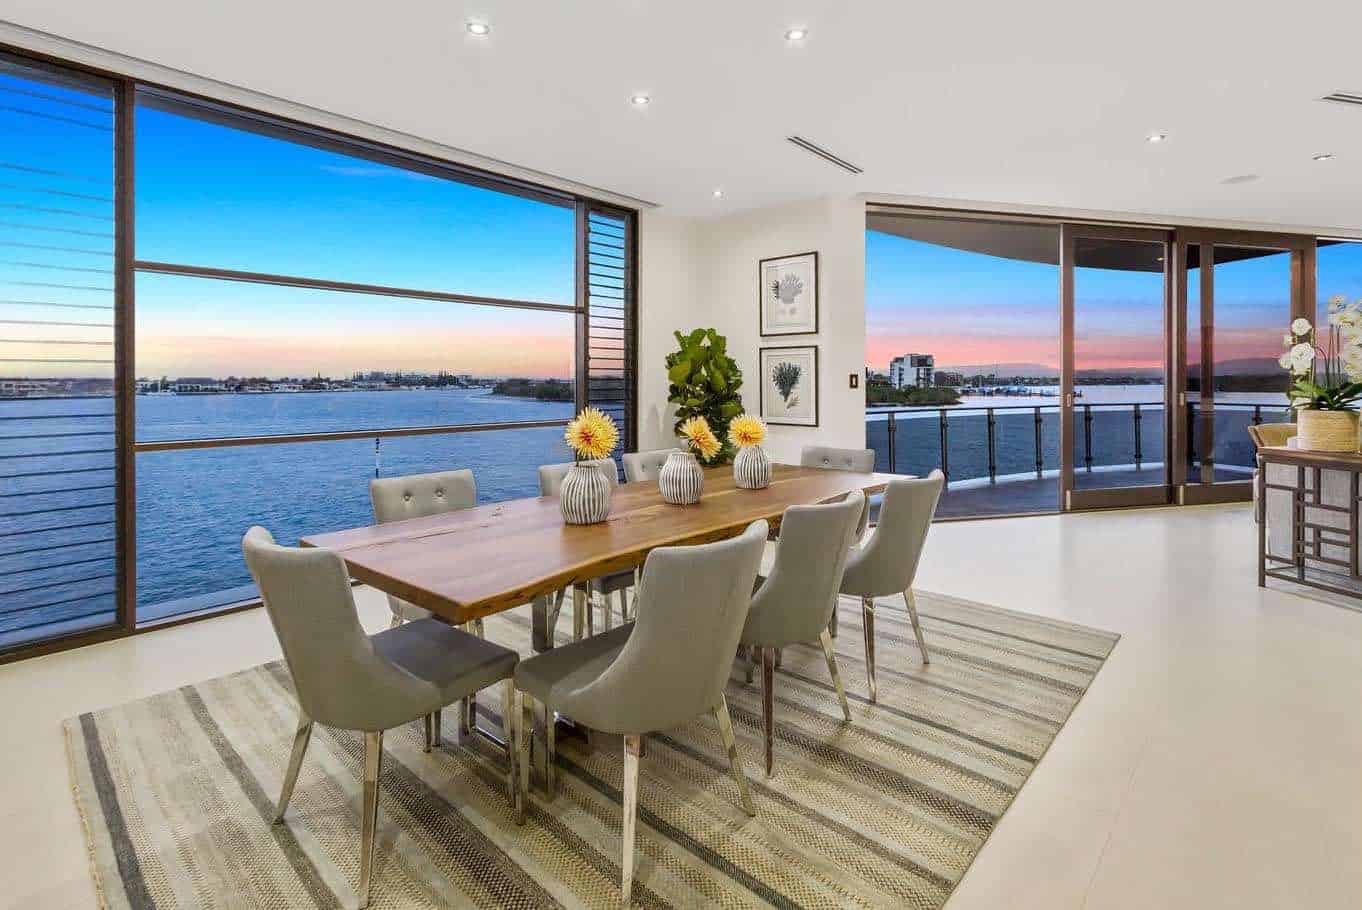 Mega espectacular mansión frente al agua y de estilo contemporáneo en Queensland, Australia a la venta por $7,2 millones